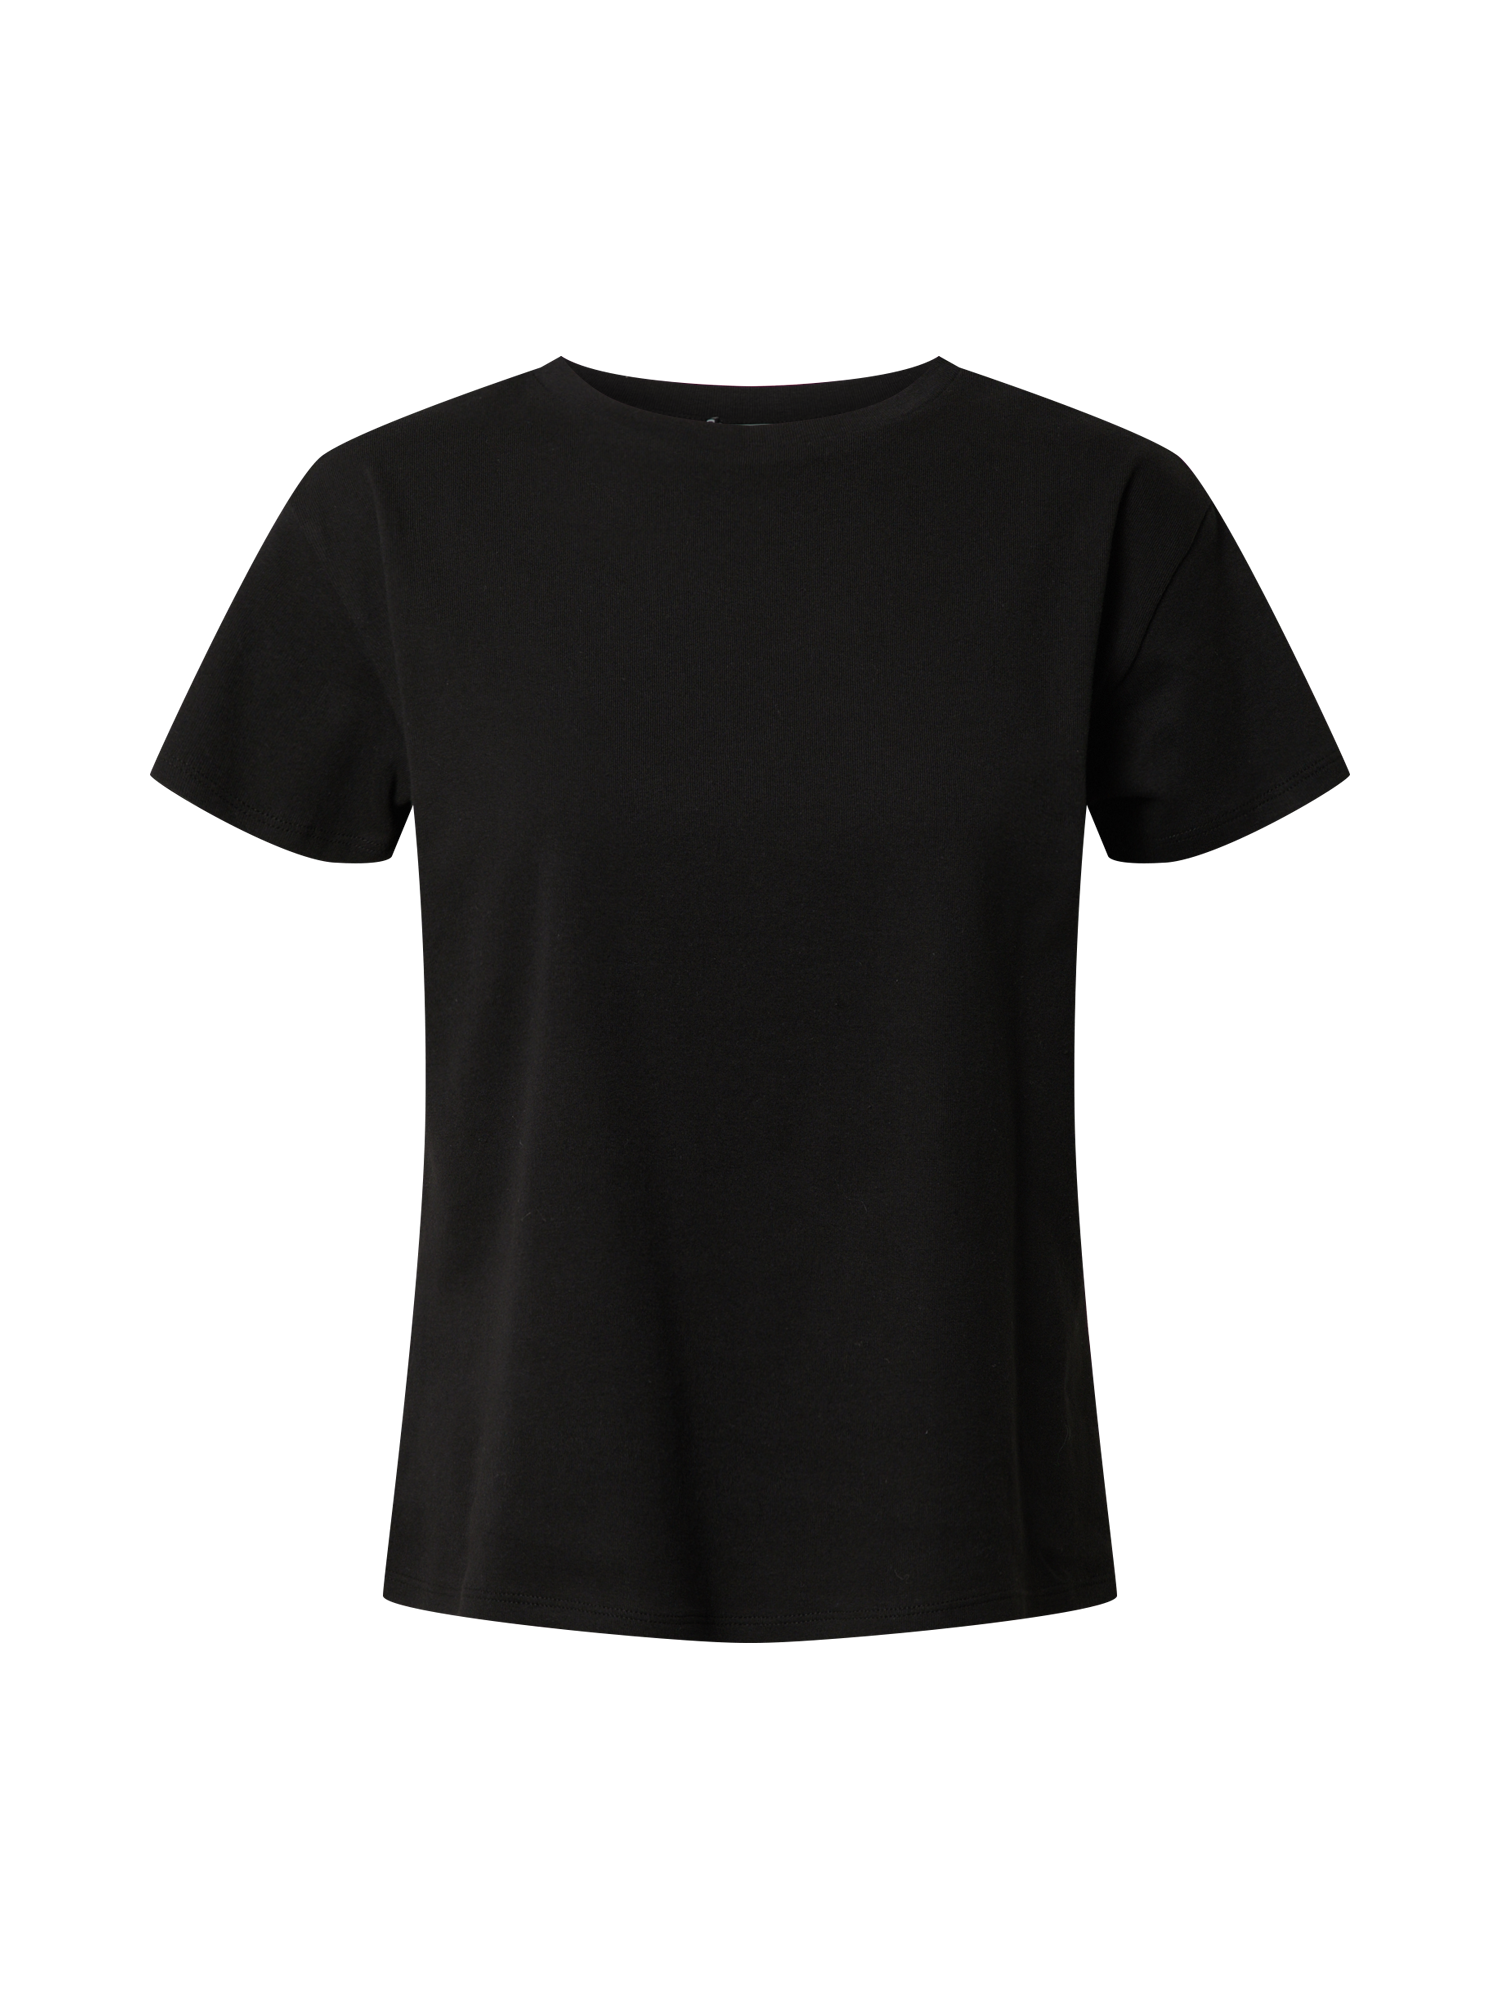 Koszulki & topy HBai7 JUST FEMALE Koszulka Cash w kolorze Czarnym 